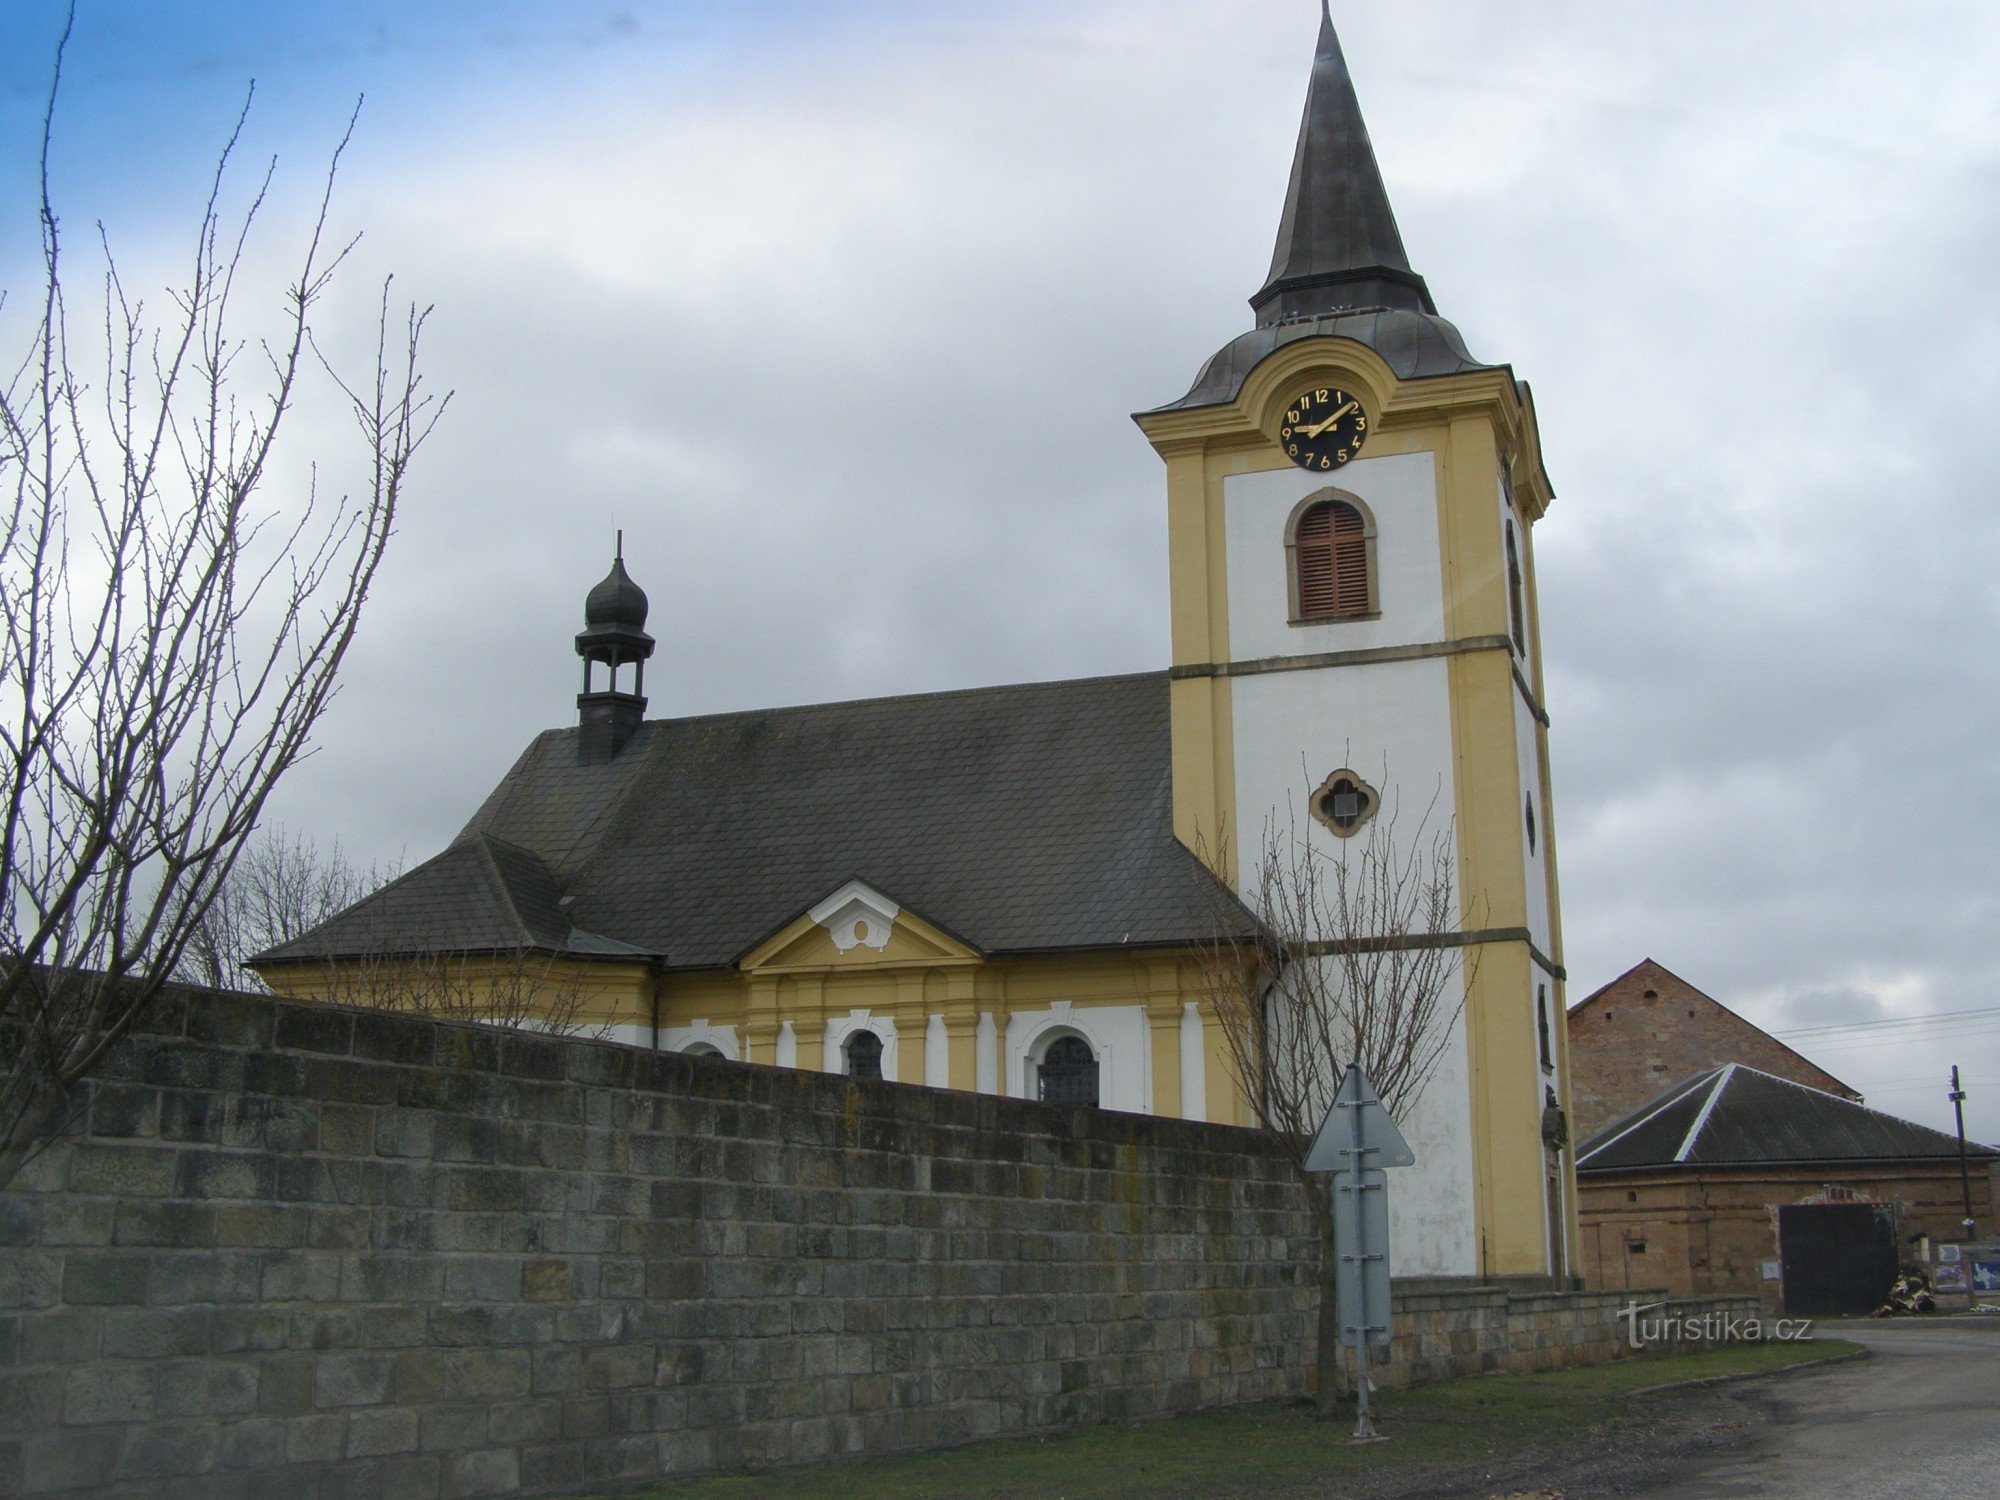 Sobčice - nhà thờ